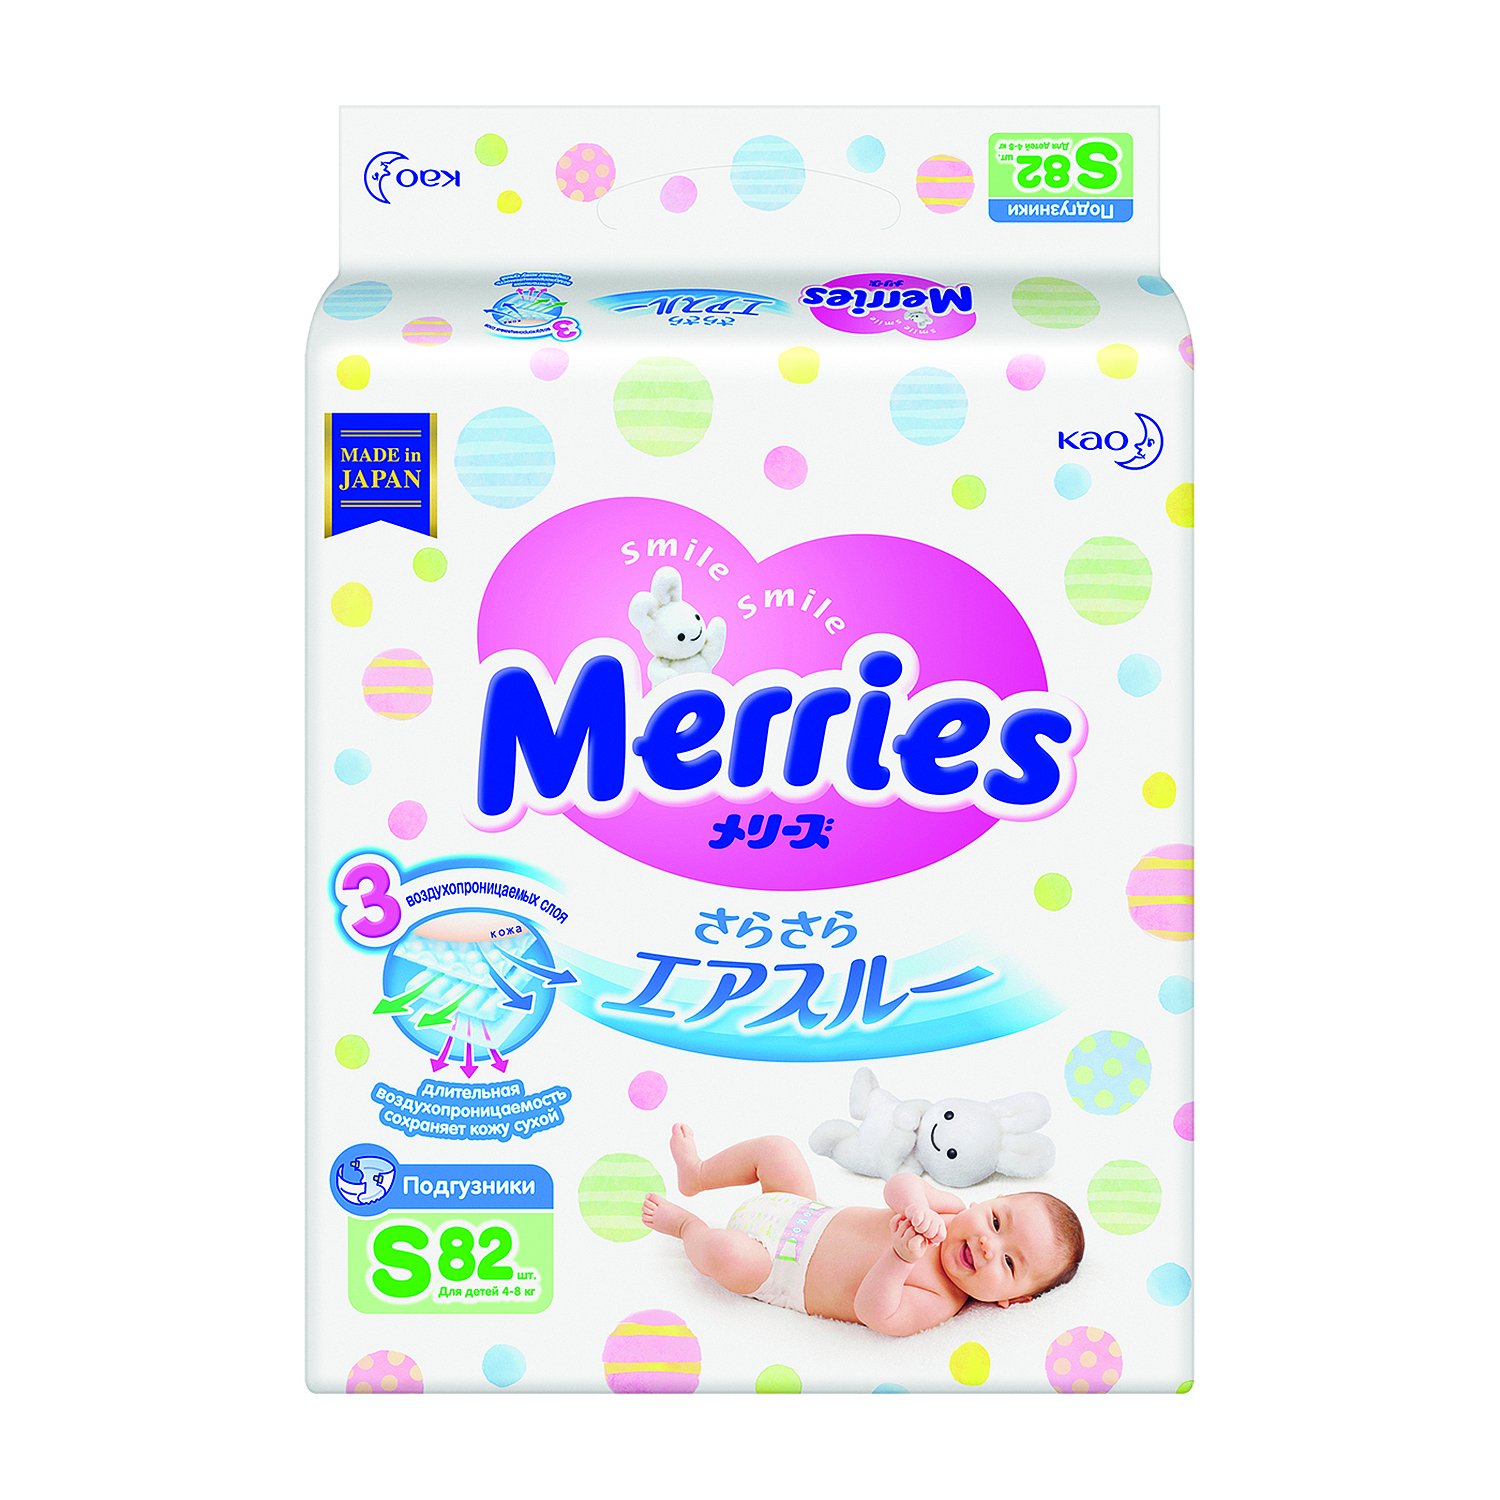 Подгузники Merries S 82 шт → цена 👍, купить японские подгузники Мерриес с 4 -8 кг 82 ш. для новорожденных в интернет-магазине